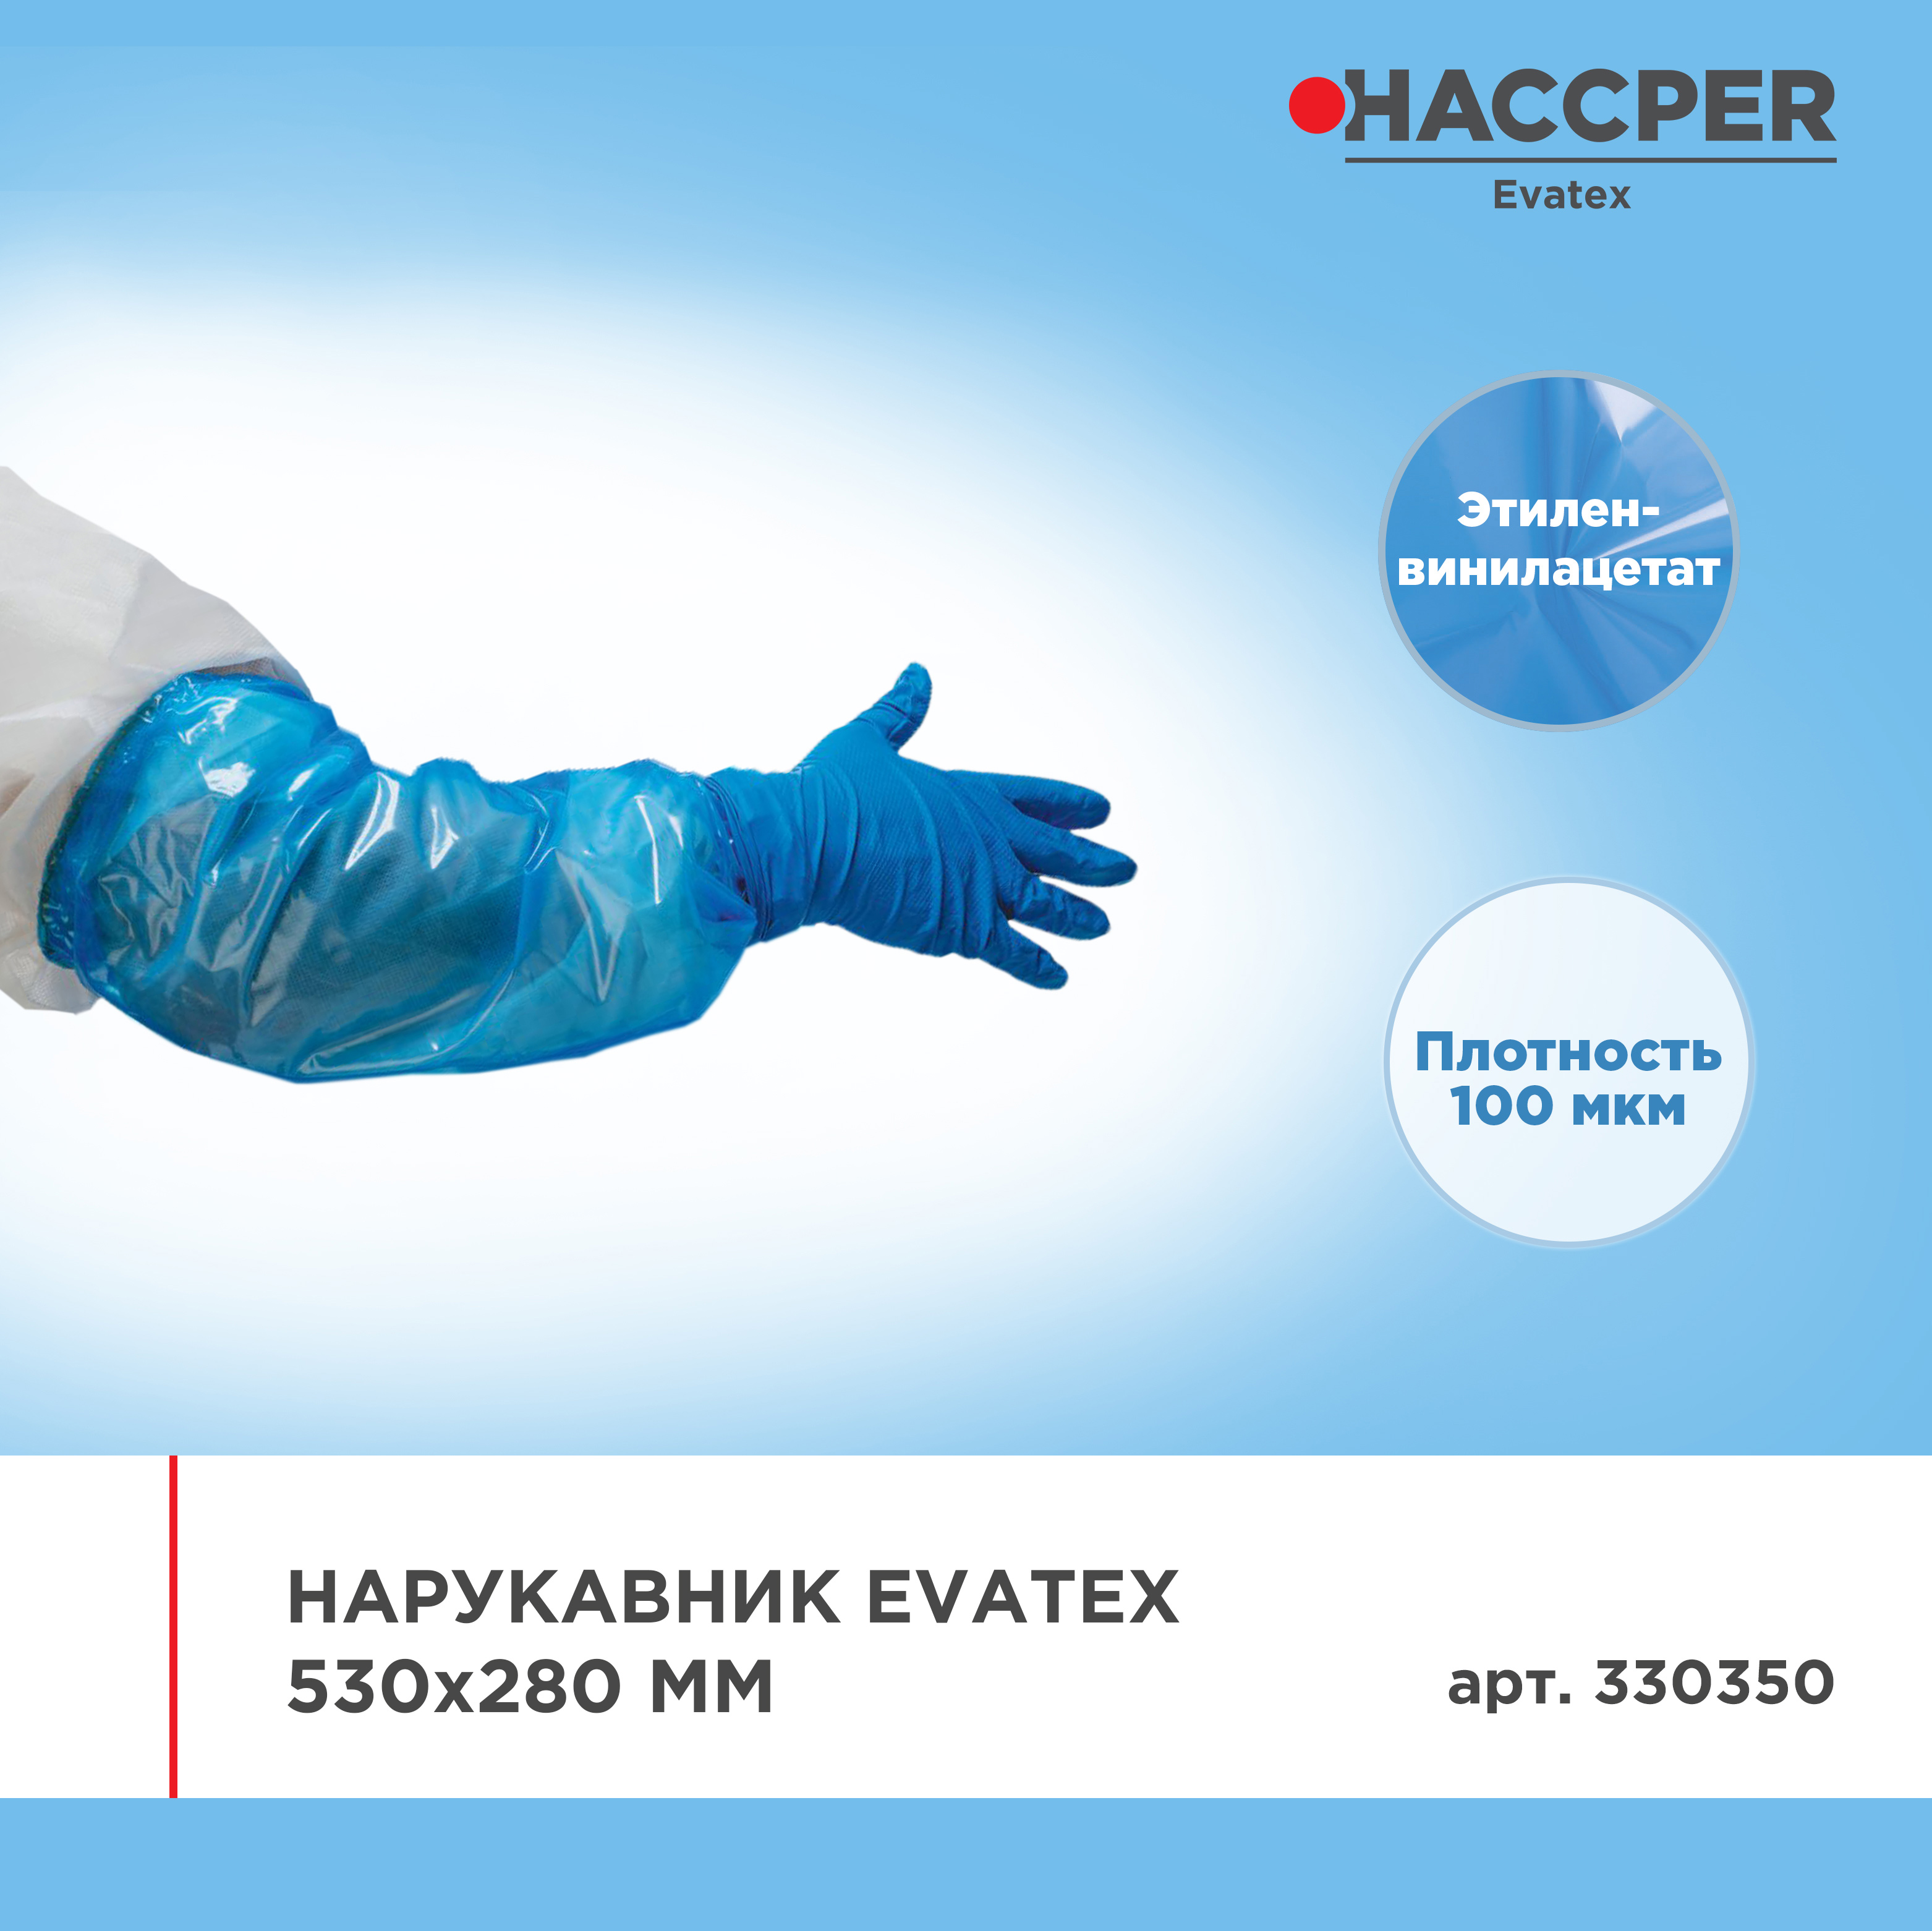 Нарукавник HACCPER Evatex 530х280 мм, 100 мкм, синий